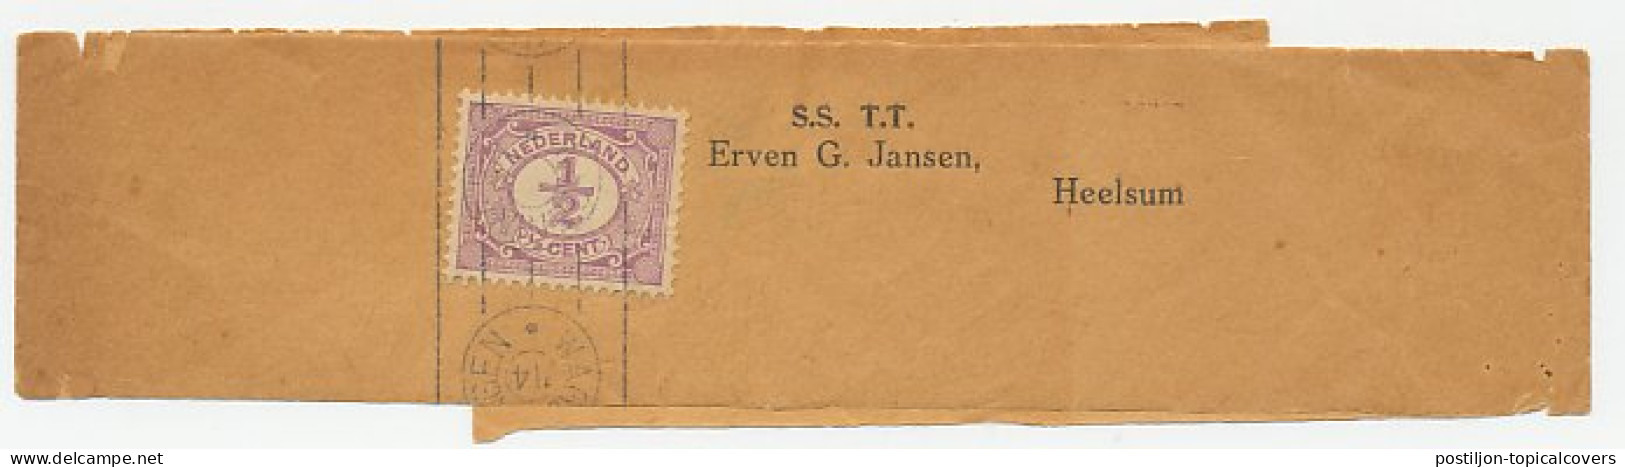 Drukwerkrolstempel / Wikkel - Wageningen 1914 - Unclassified